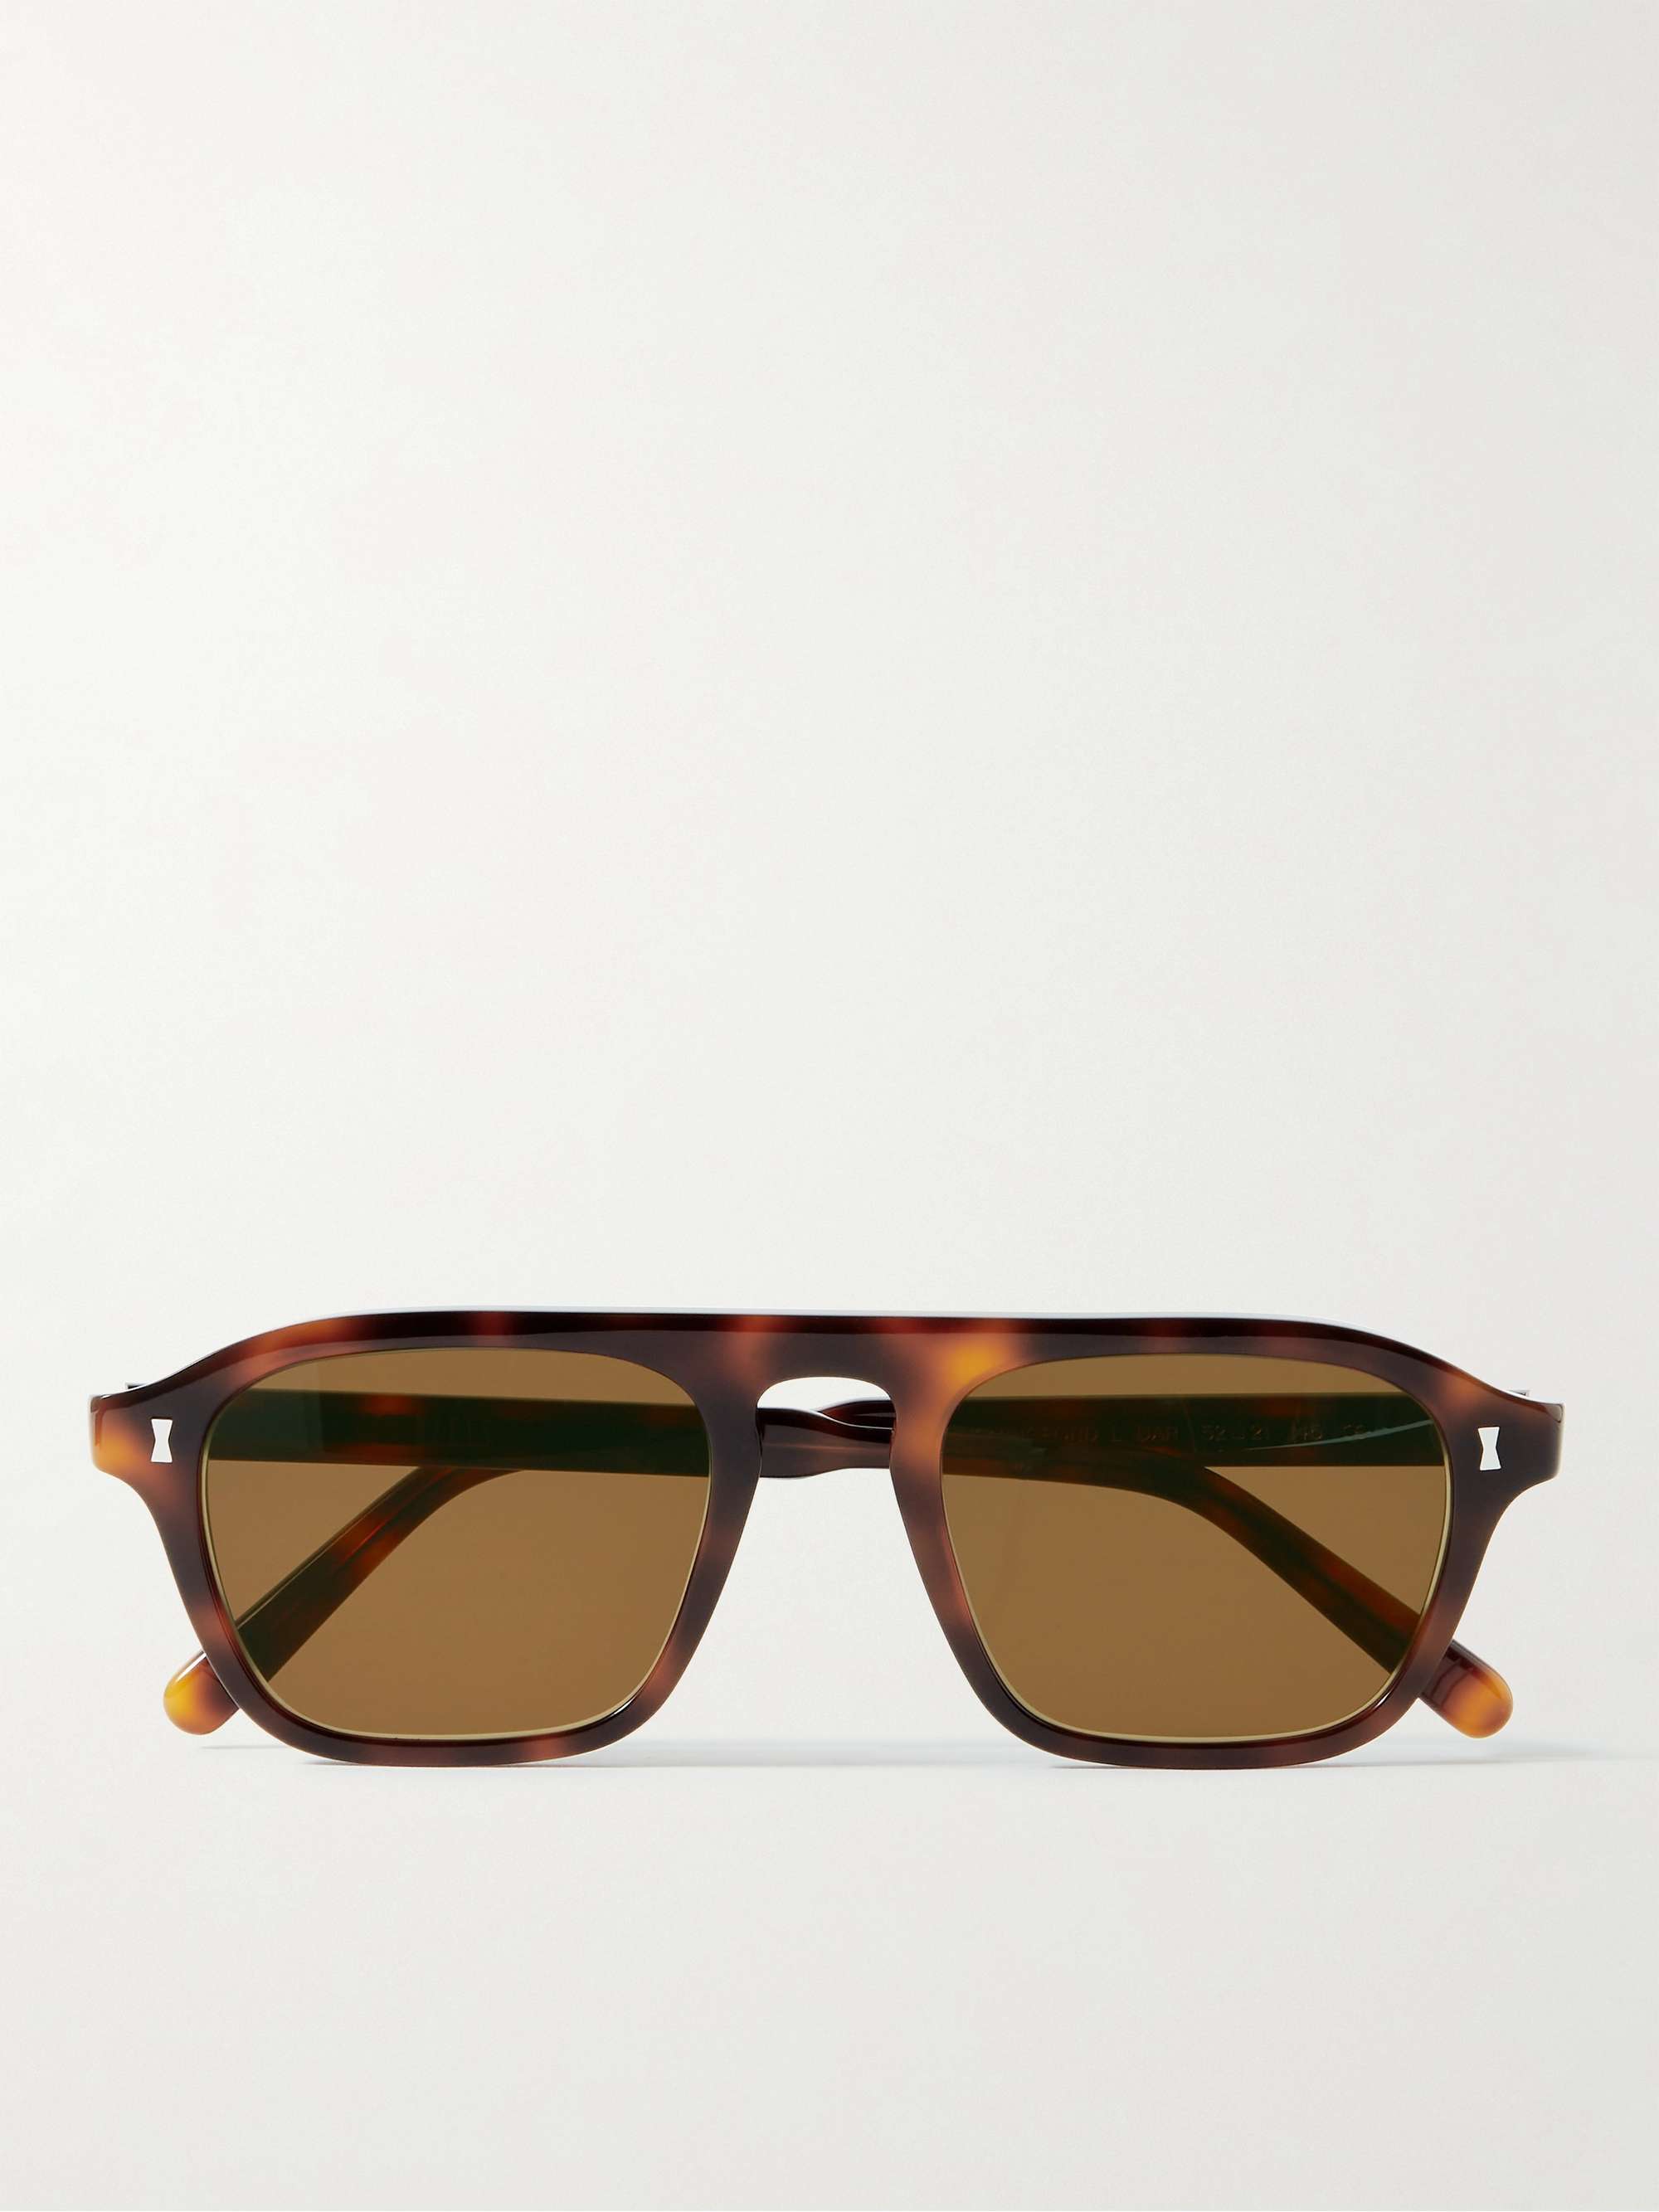 CUBITTS Hemingford Rectangular-Frame Tortoiseshell Acetate Sunglasses